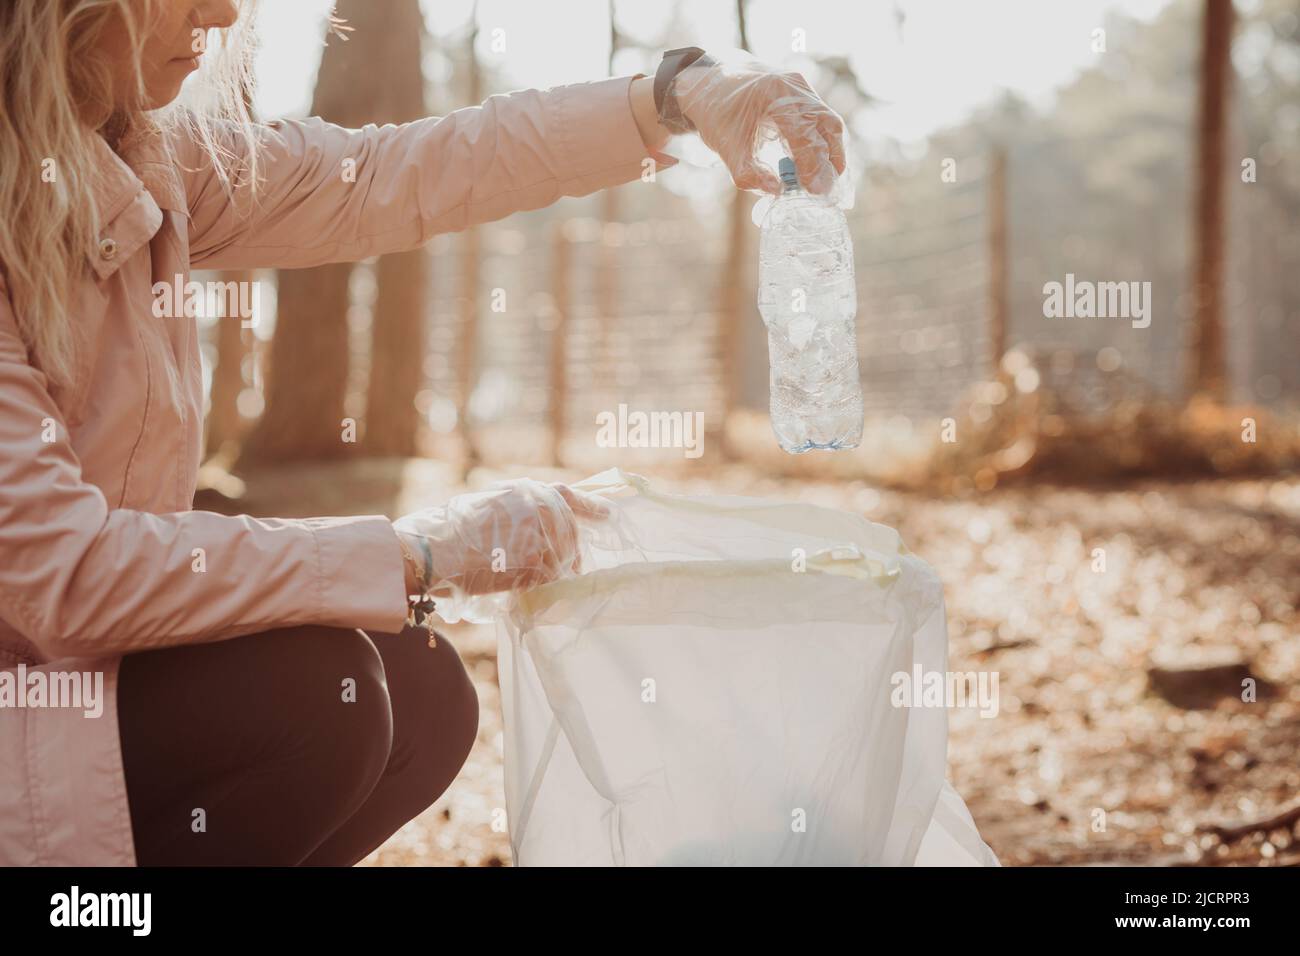 Une militante de femme cultivée aide à nettoyer la forêt des déchets de plastique, des ordures. Prenez la bouteille dans le sac. Recyclage écologique mondial Banque D'Images